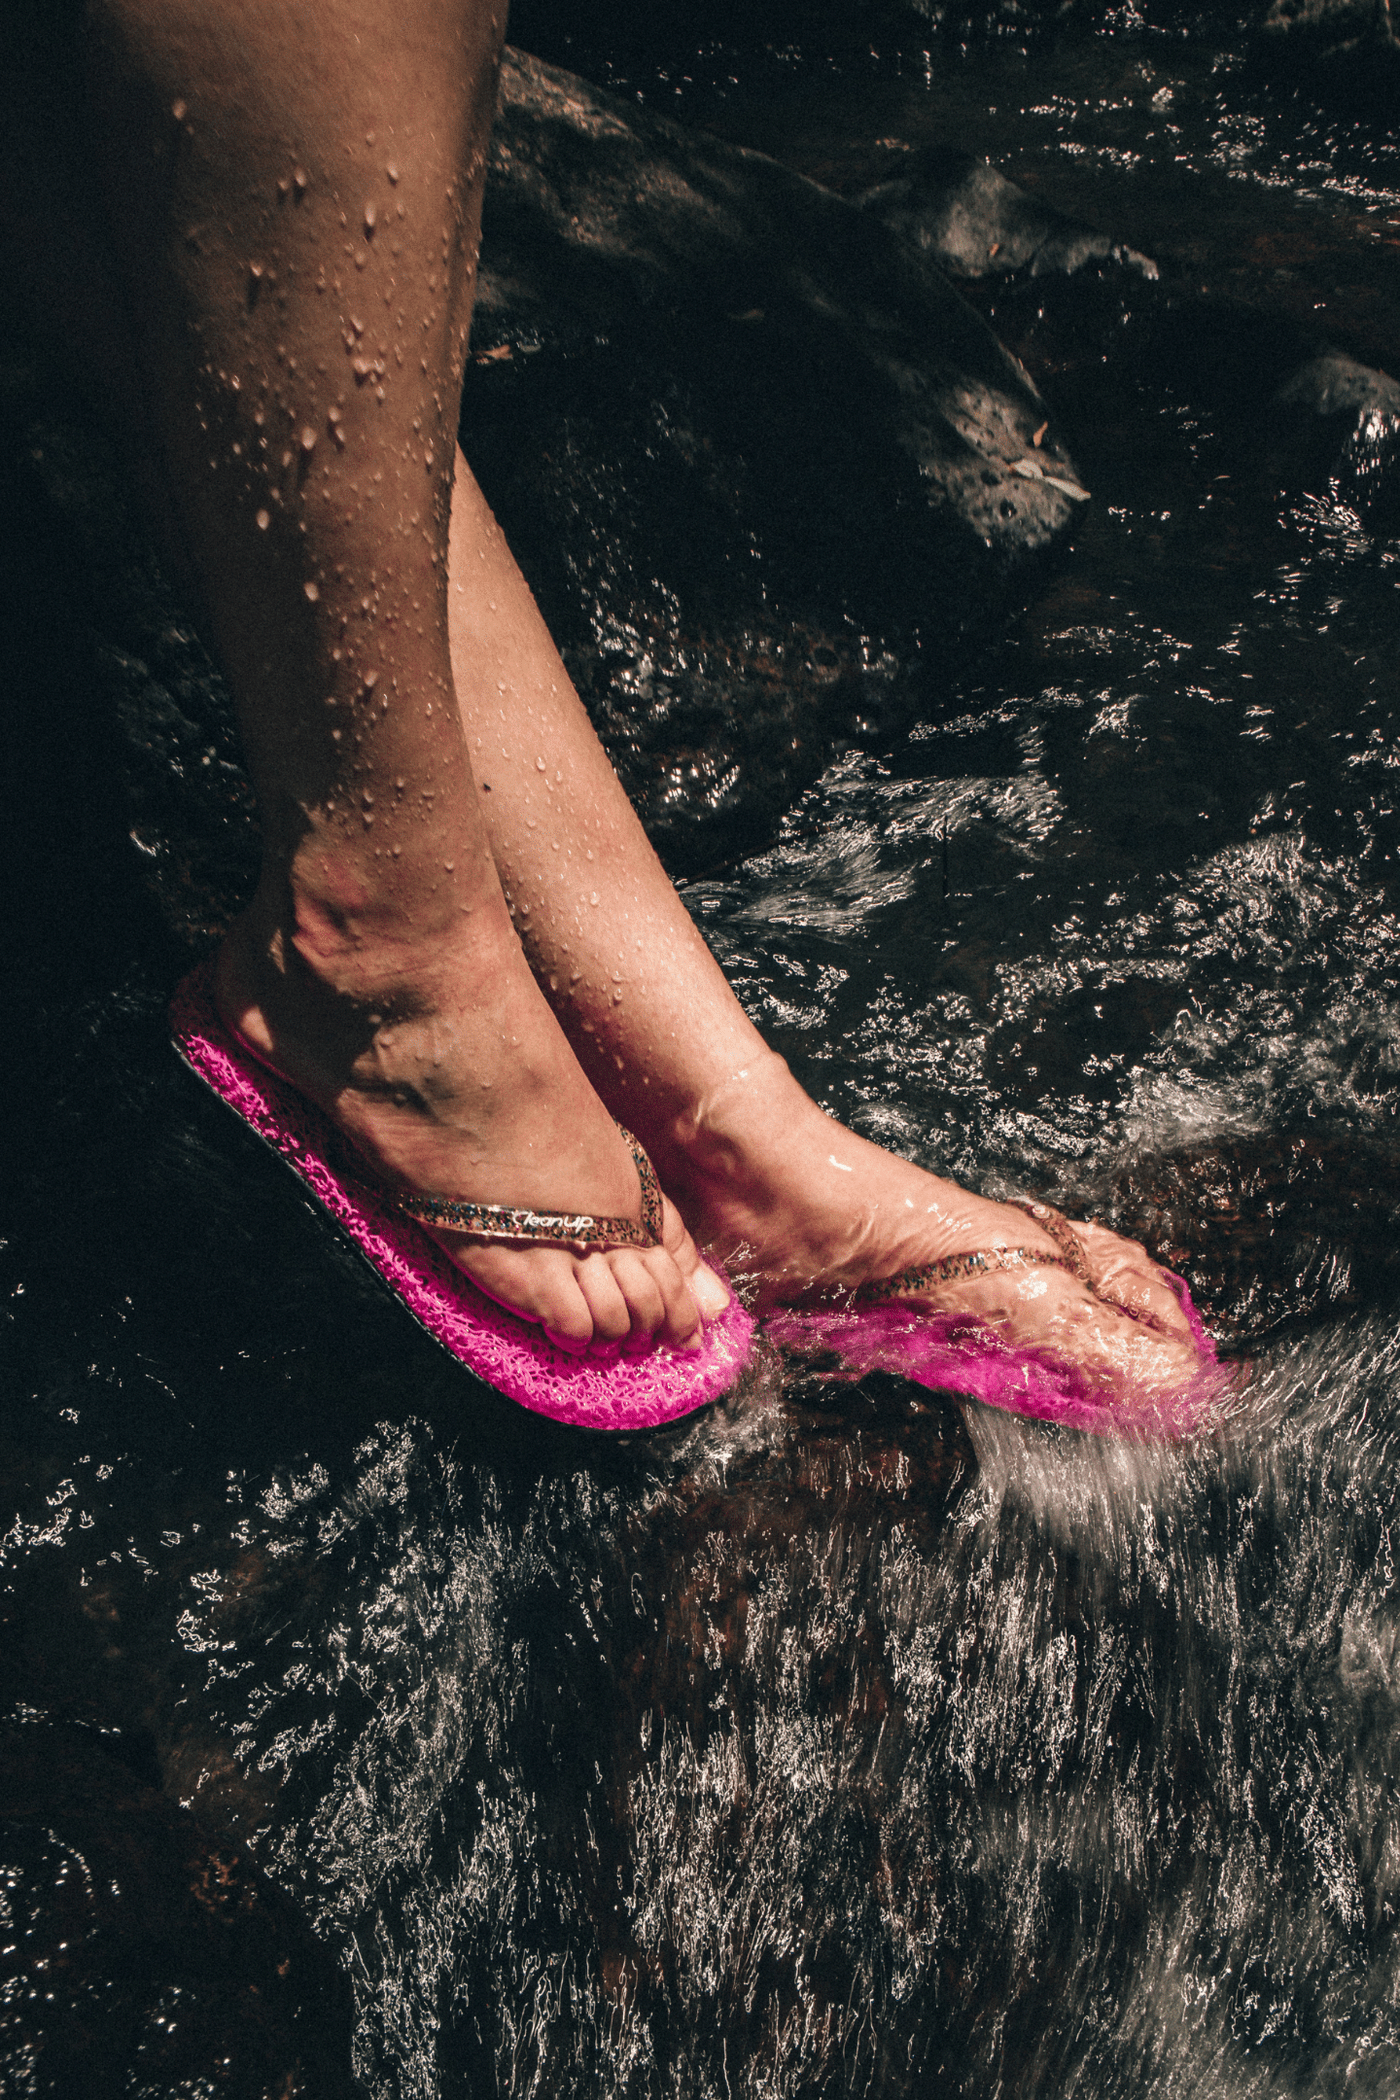 Rio Martina Flip Flop Damen von CleanUp Flat Joy Pink. Durchsichtiger Riemen mit Glitzer. Super flexible Sohle aus recycelten Materialien.  Innensohle aus 100% recycelbarem synthetischen Fasern, die die Durchblutung anregen. Hergestellt in Brasilien. Frühjarh Sommer Damenschuhe.